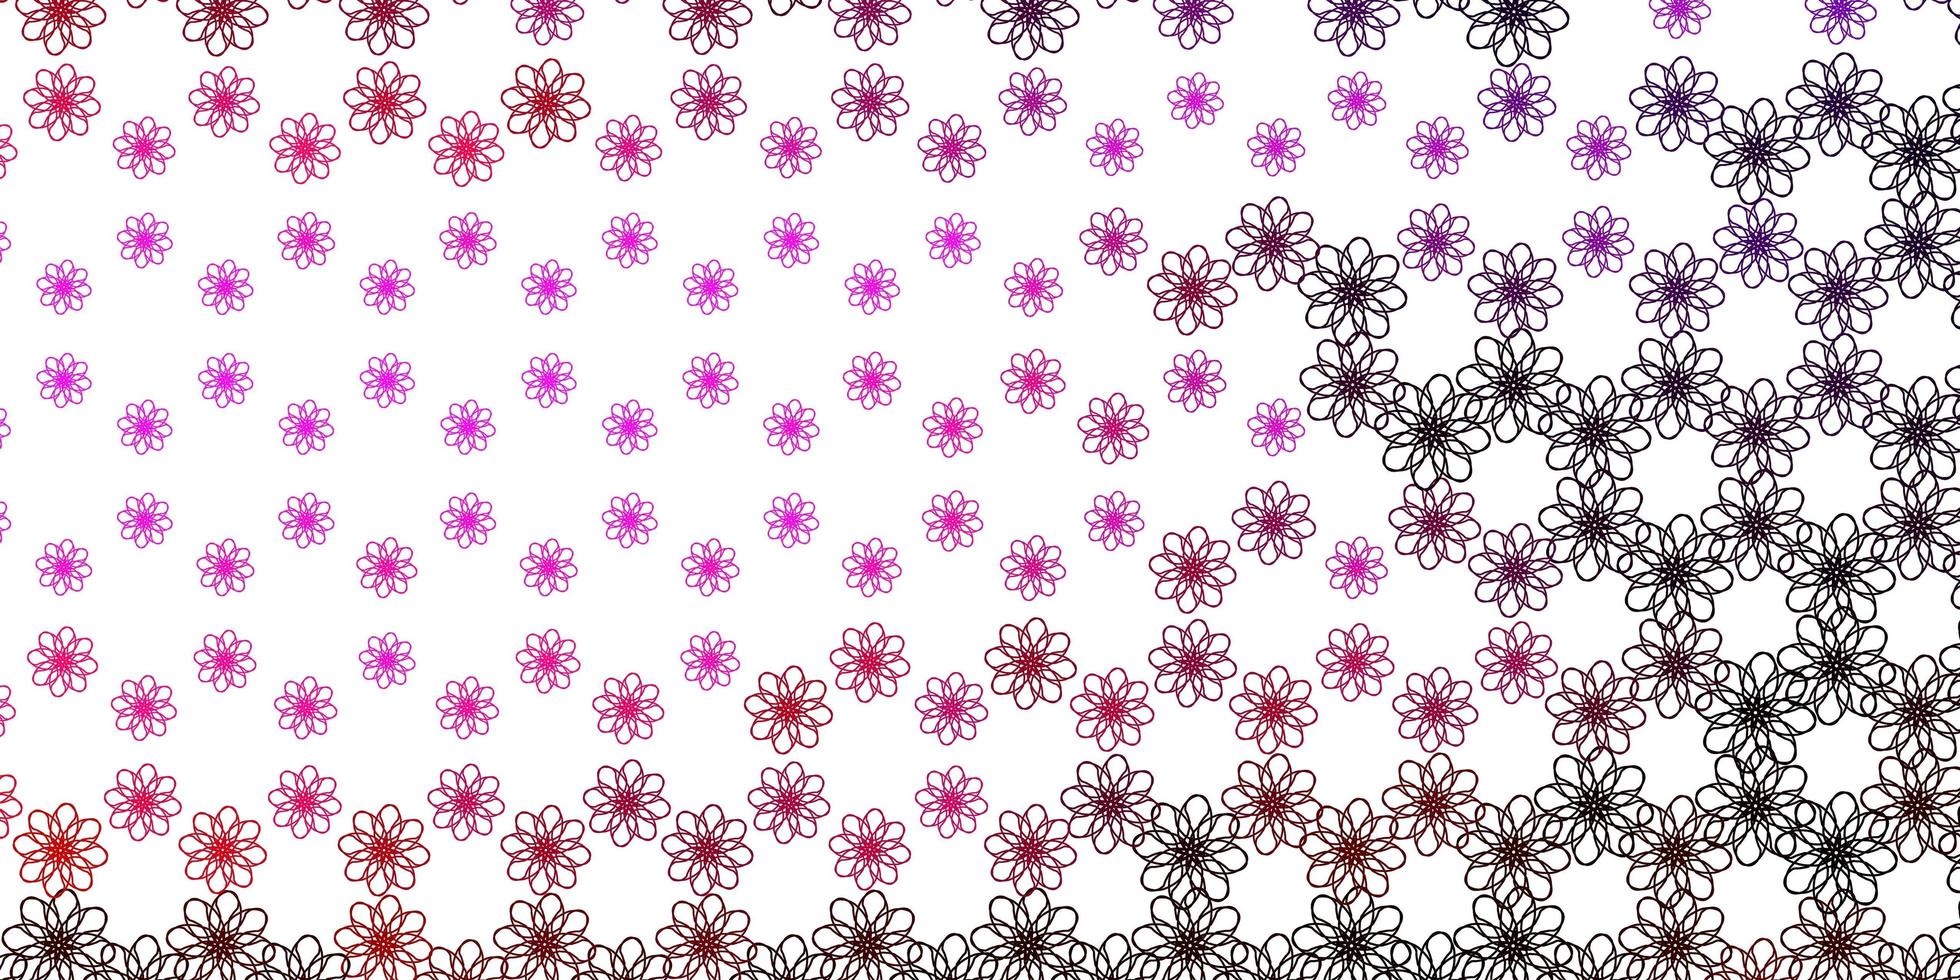 padrão de vetor rosa claro com linhas irônicas.